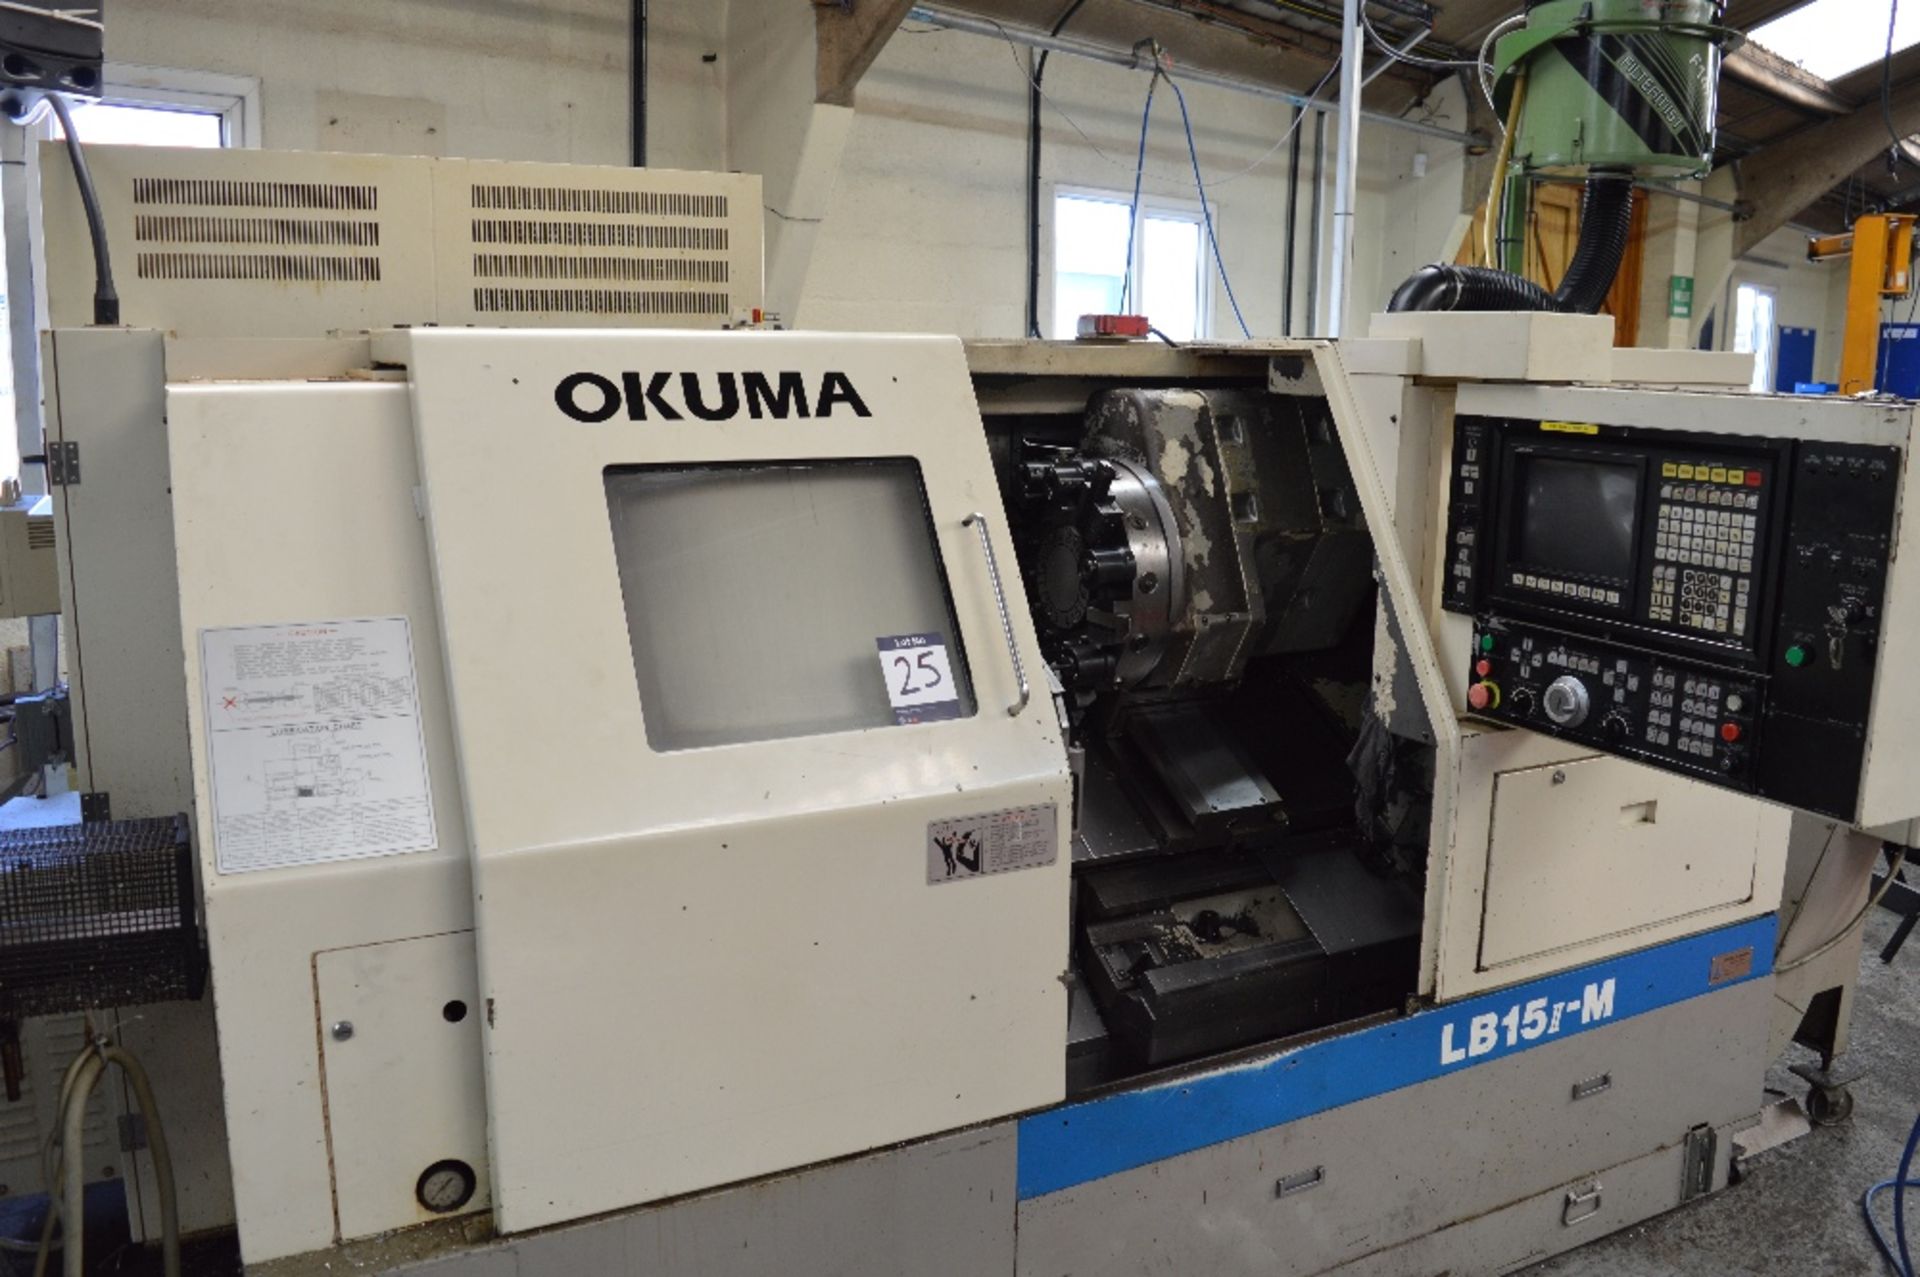 Okuma LB15 II-M CNC lathe
Serial no. 0605.1310
Max